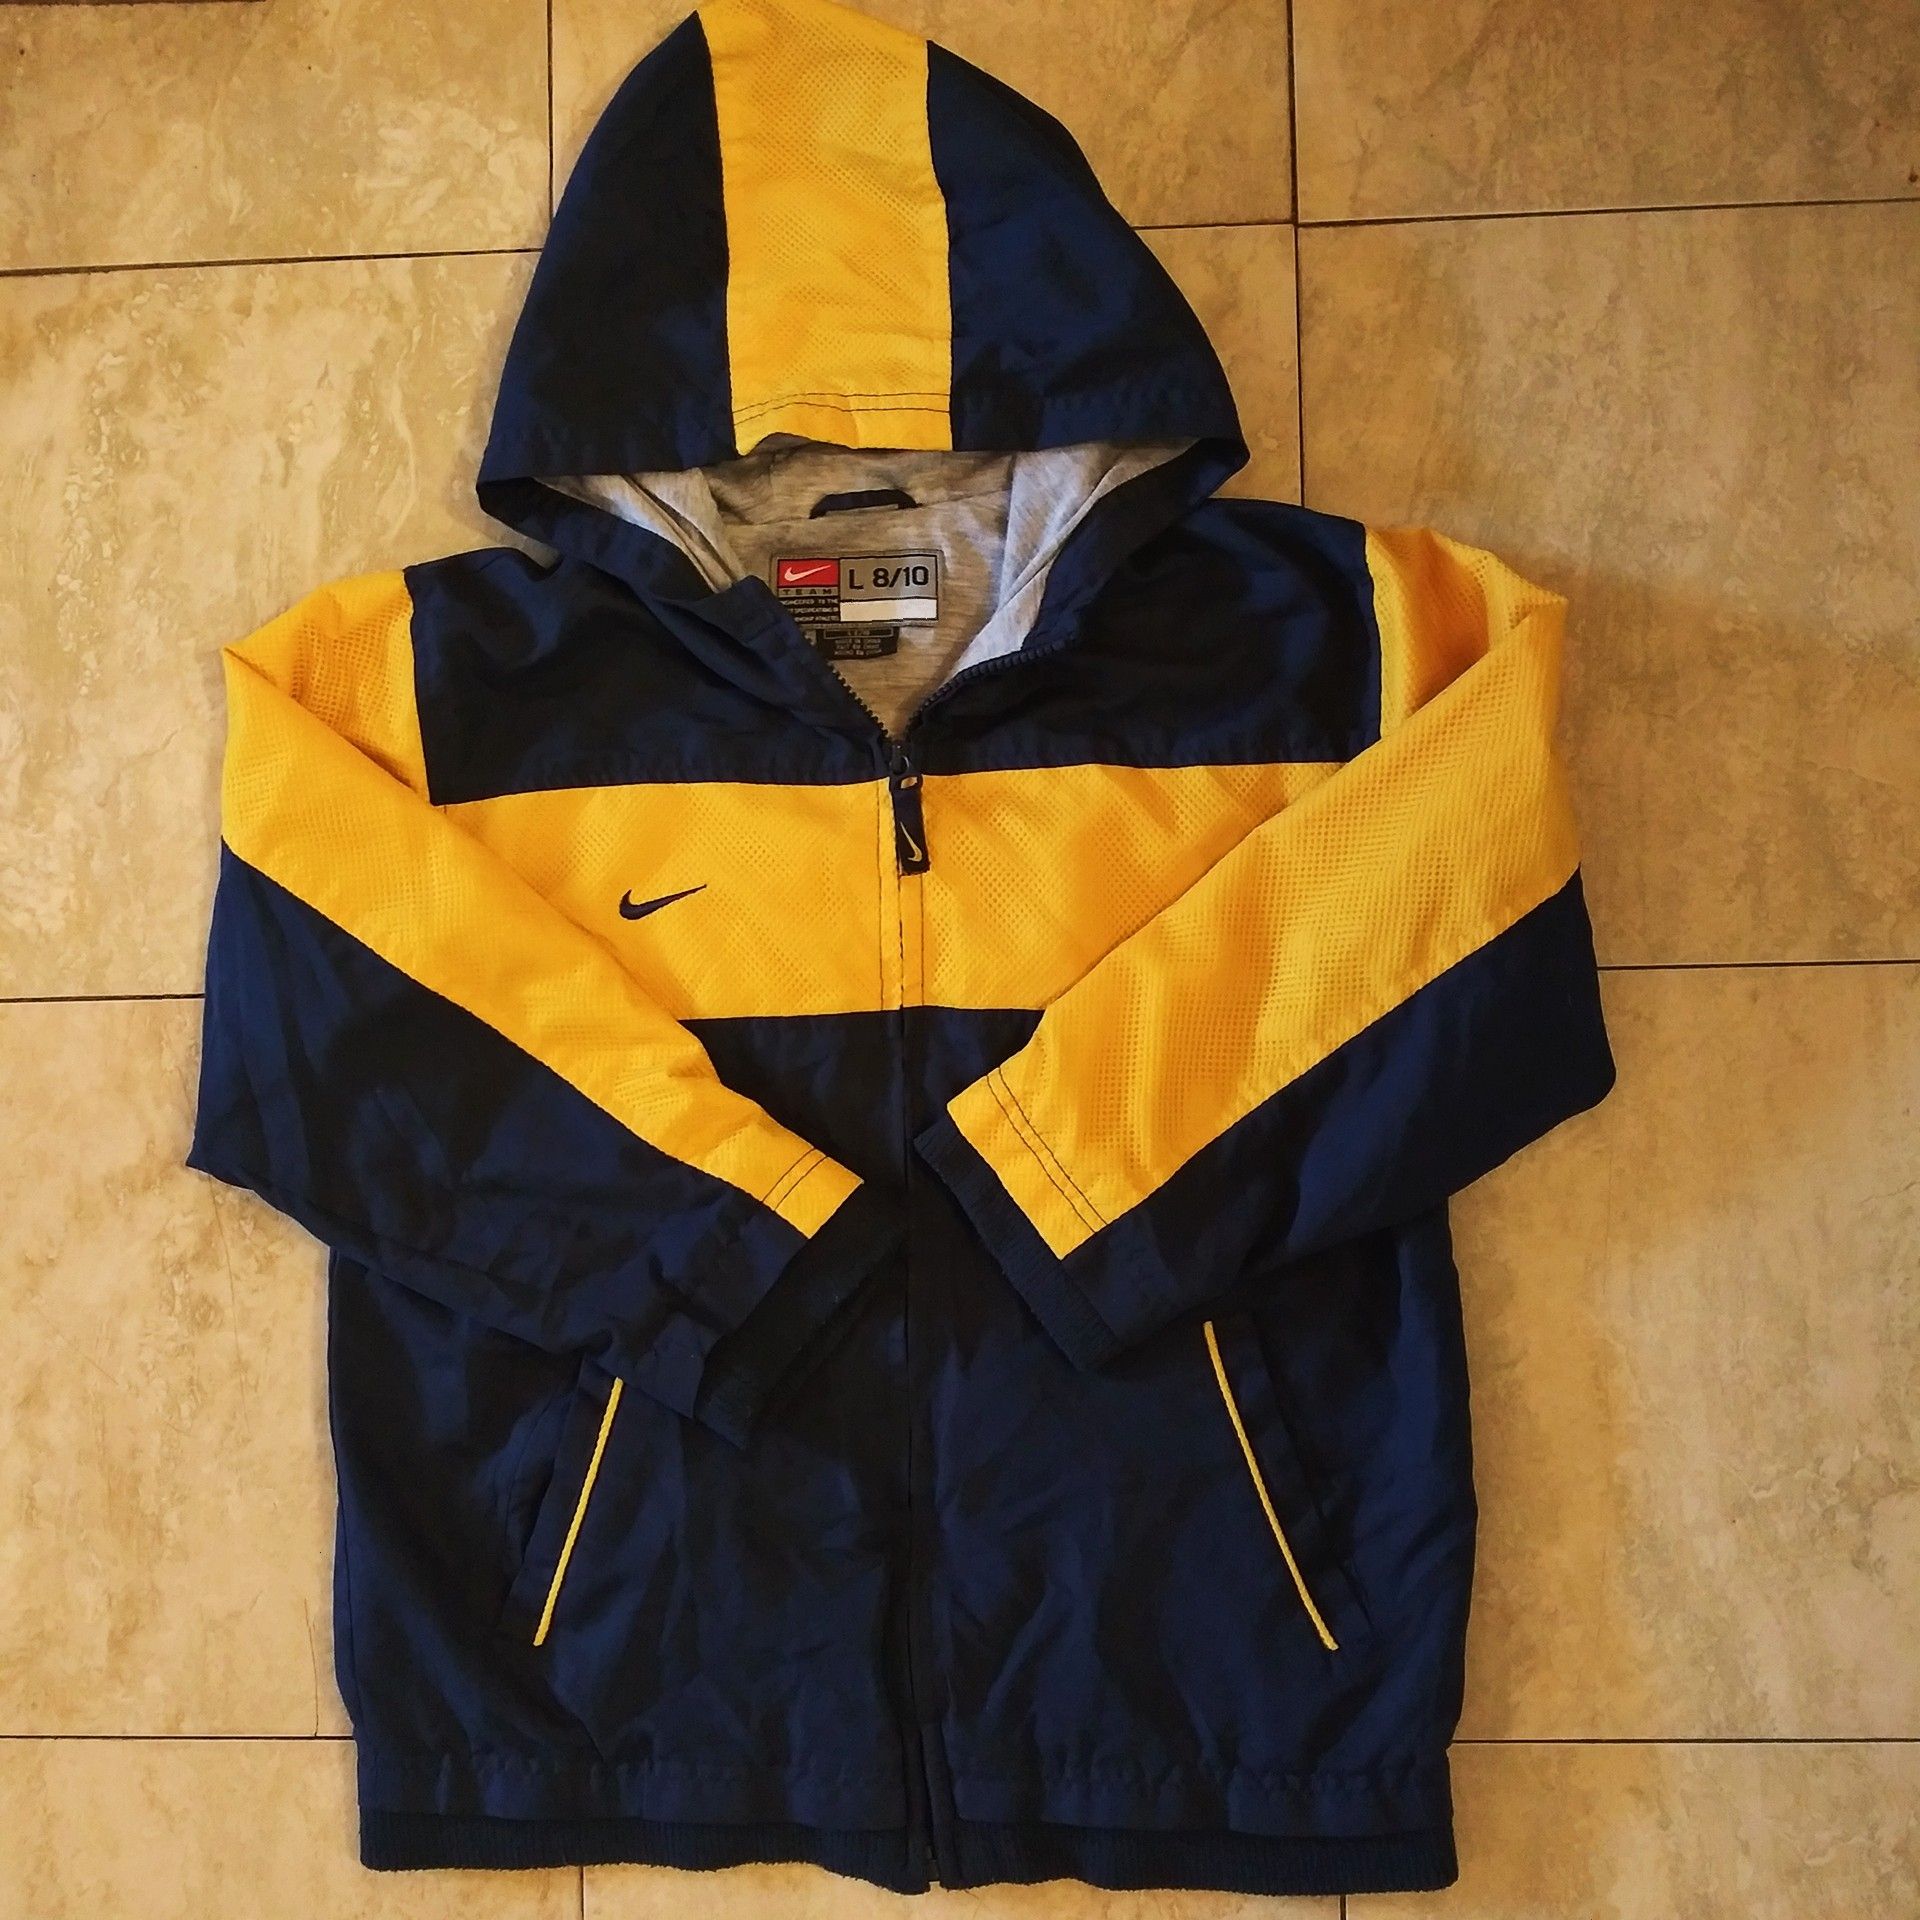 Boys Nike jacket size large